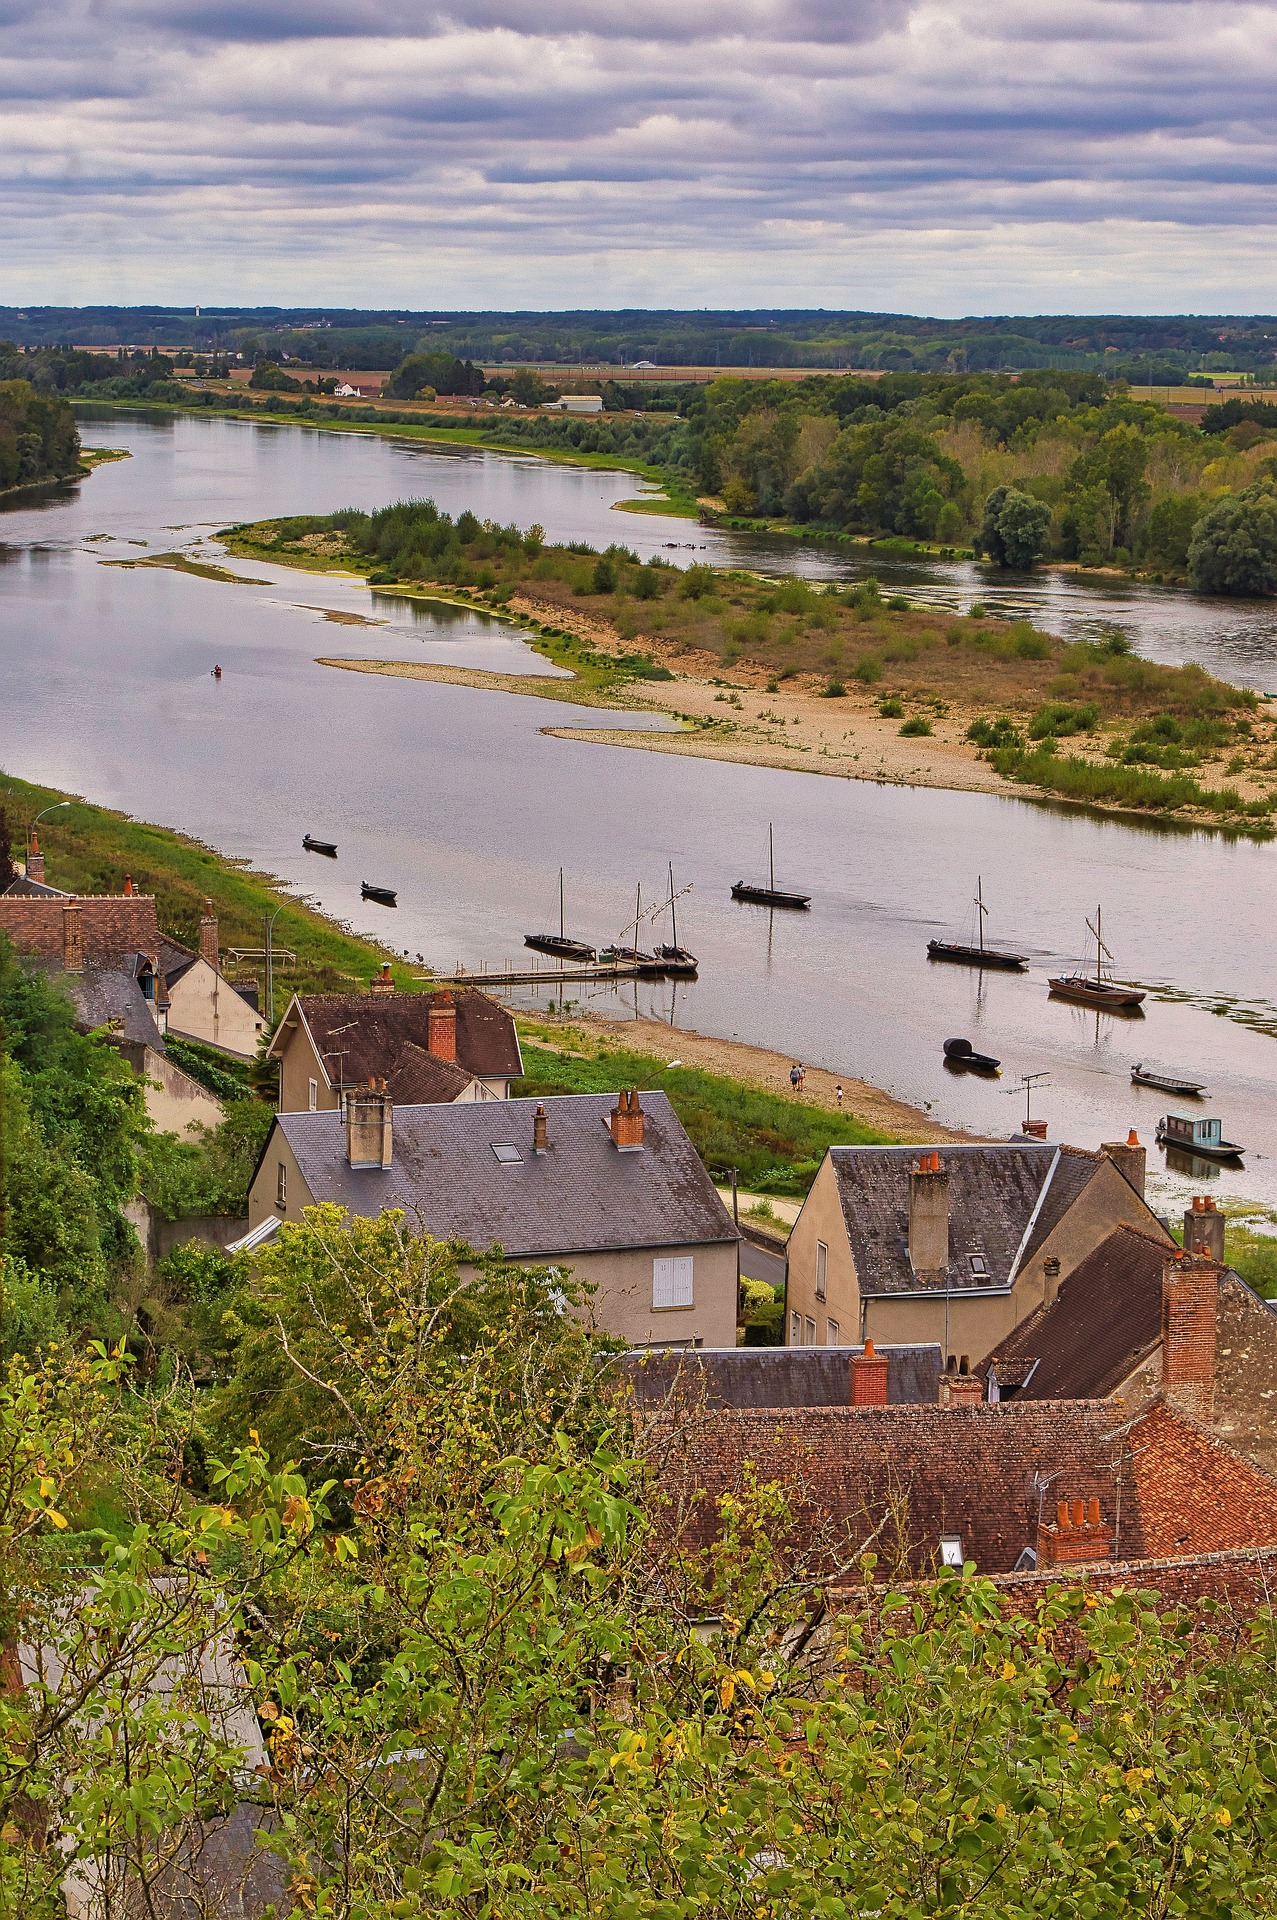 Balade sur les bords de Loire, près de Chinon.